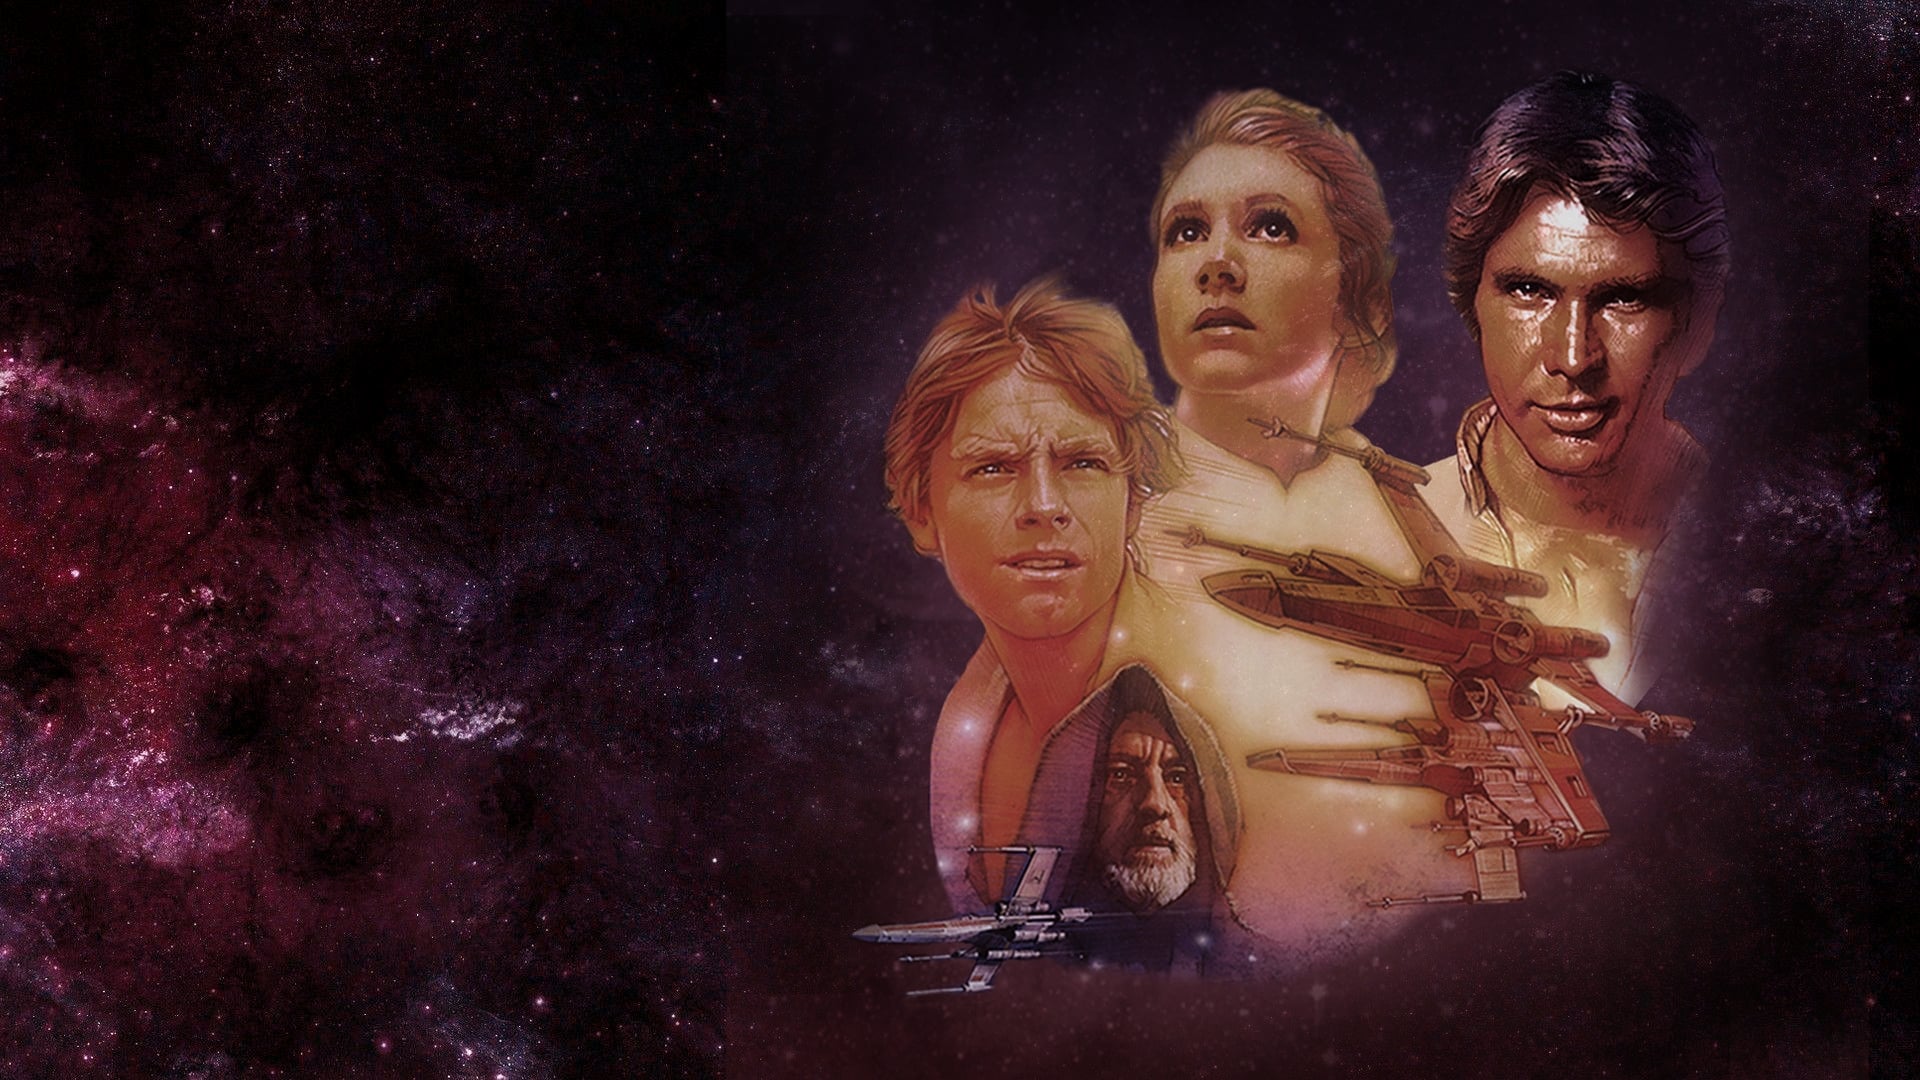 Star Wars Episodio IV: Una nueva esperanza